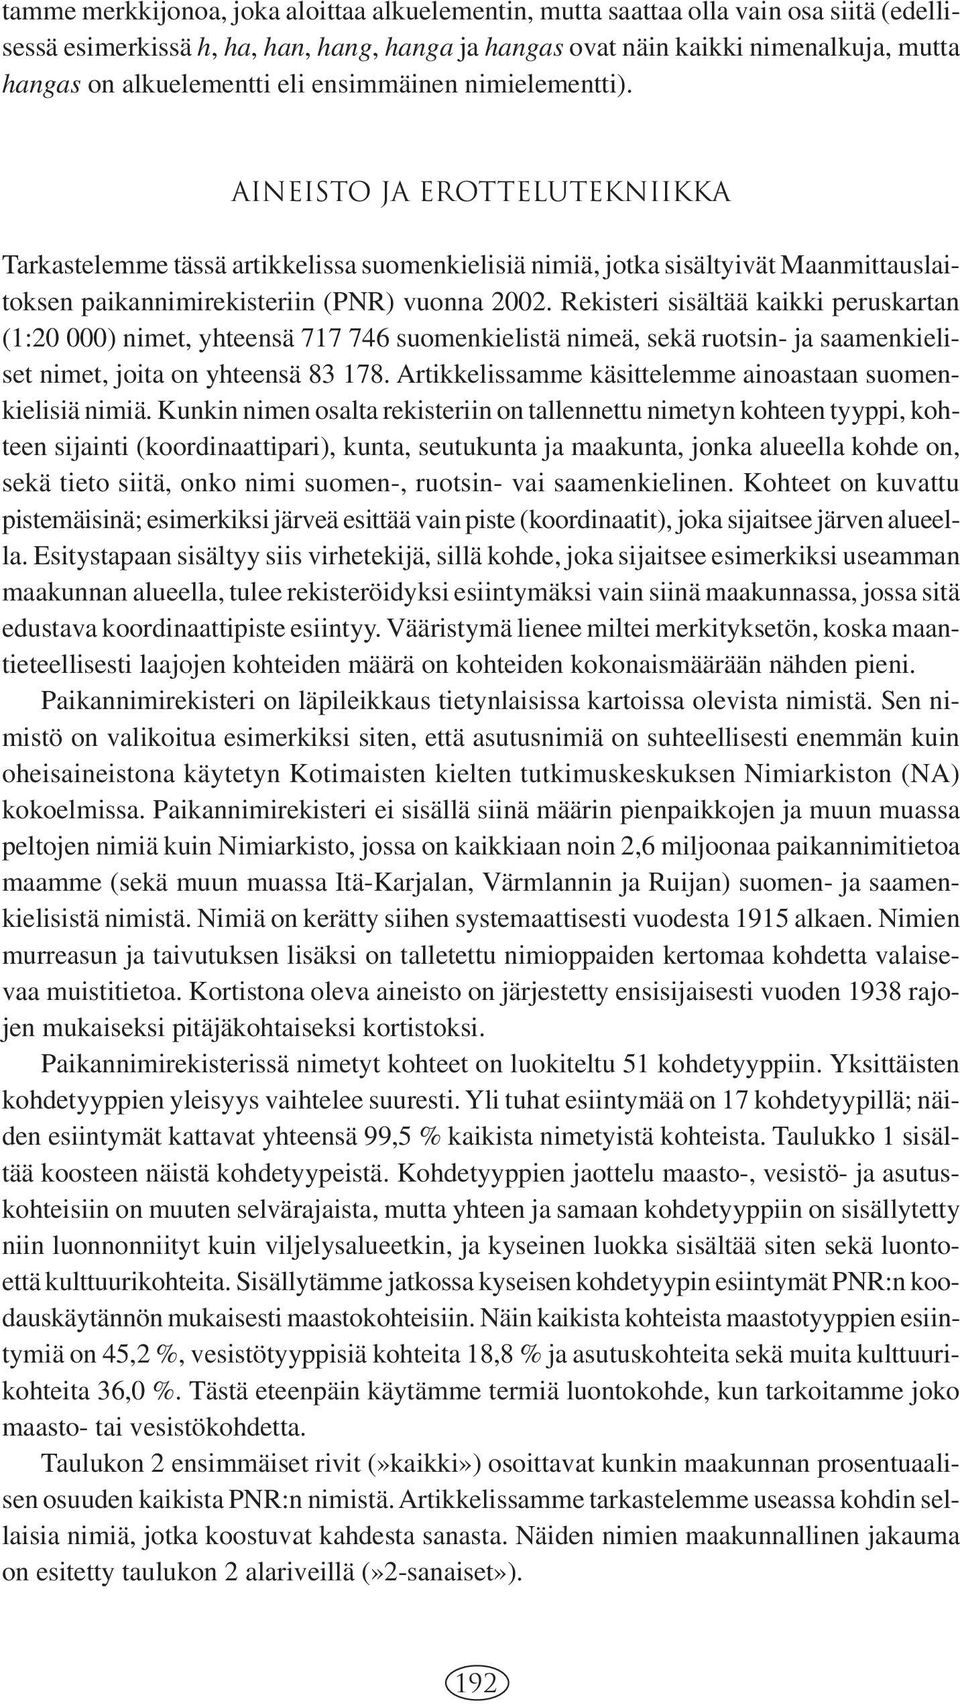 Aineisto ja erottelutekniikka Tarkastelemme tässä artikkelissa suomenkielisiä nimiä, jotka sisältyivät Maanmittauslaitoksen paikannimirekisteriin (PNR) vuonna 2002.